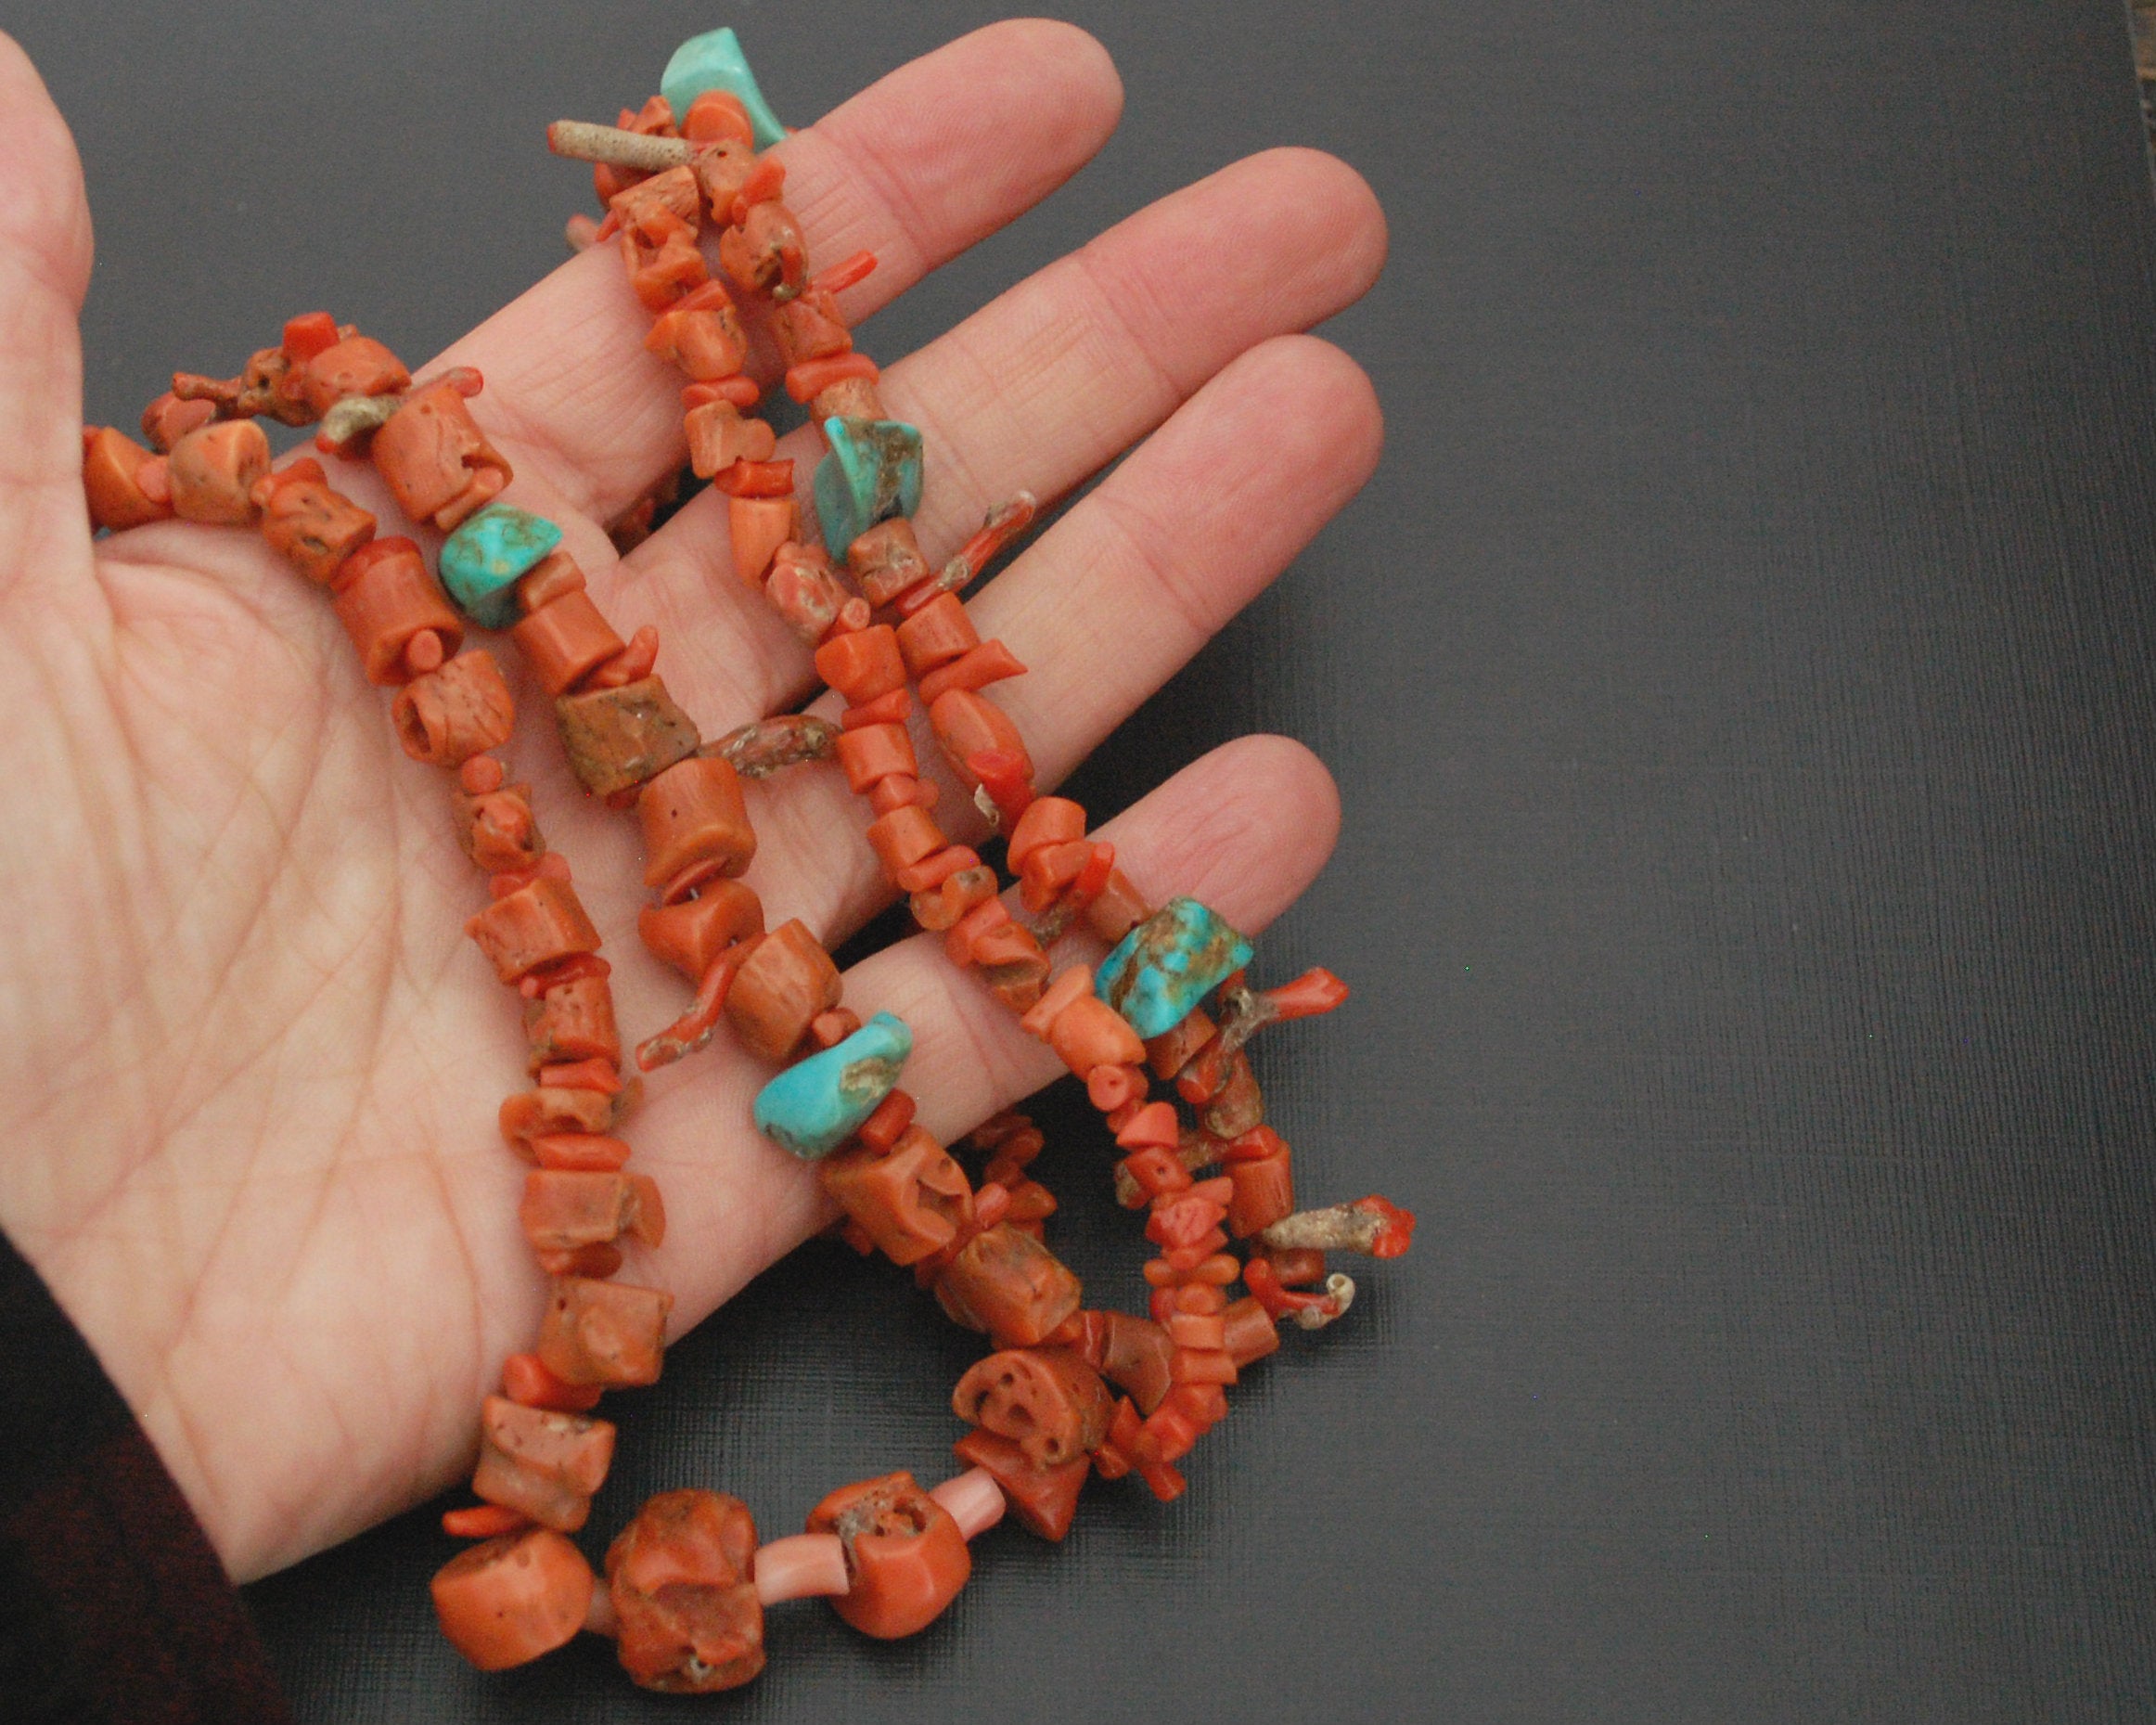 Long Yemeni Coral Turquoise Necklace